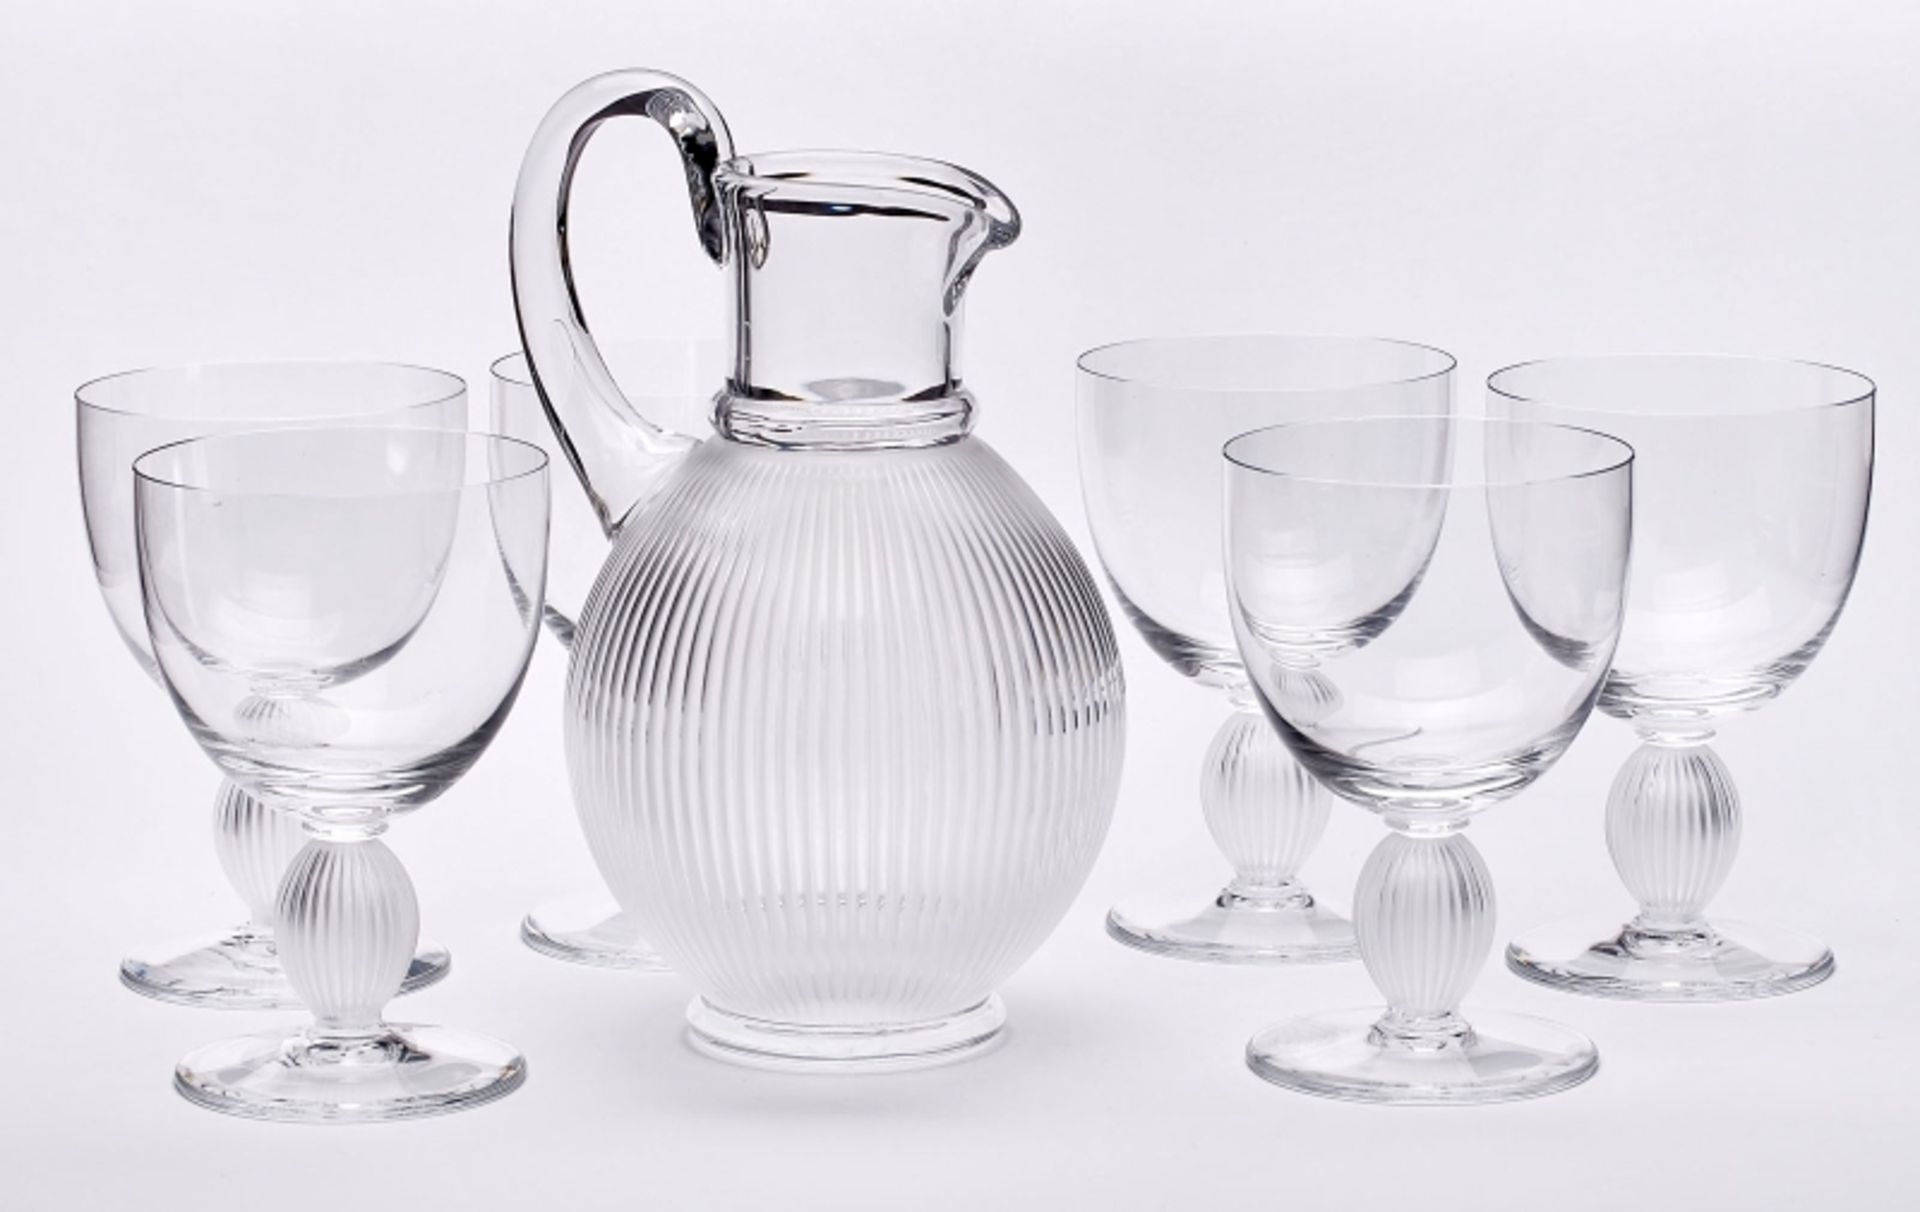 Wein-Set für 6 Pers., Lalique 2. Hälfte 20. Jh. - Bild 2 aus 3